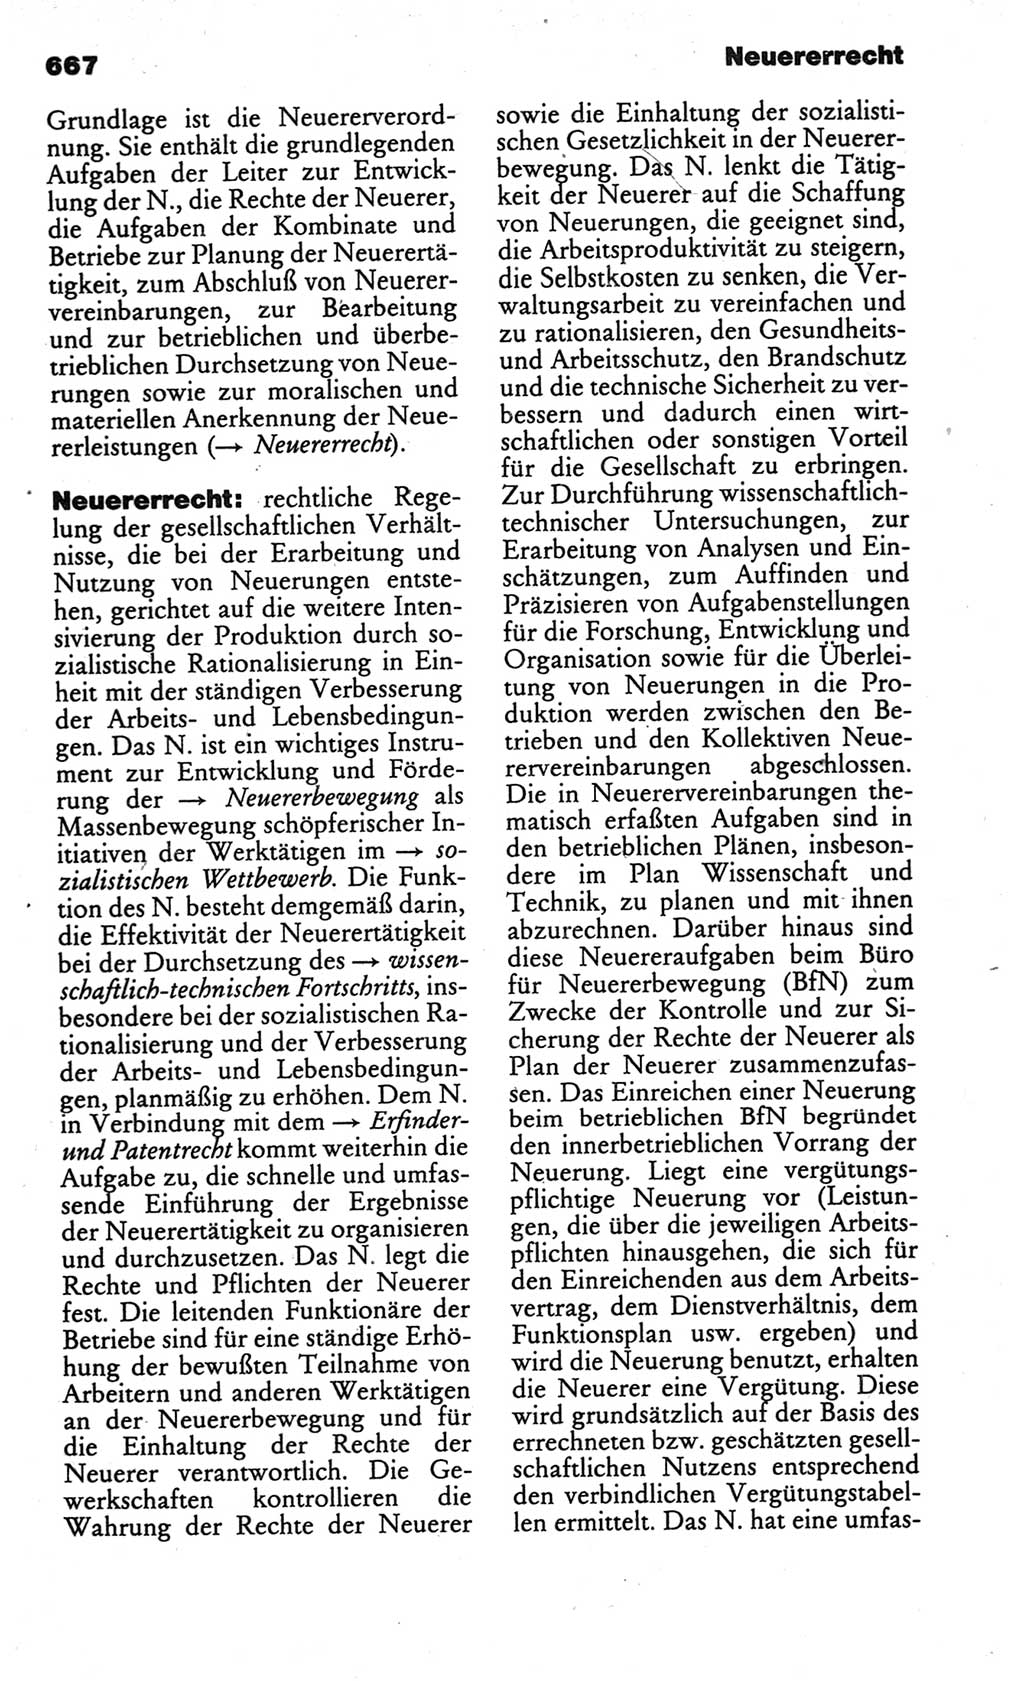 Kleines politisches Wörterbuch [Deutsche Demokratische Republik (DDR)] 1986, Seite 667 (Kl. pol. Wb. DDR 1986, S. 667)